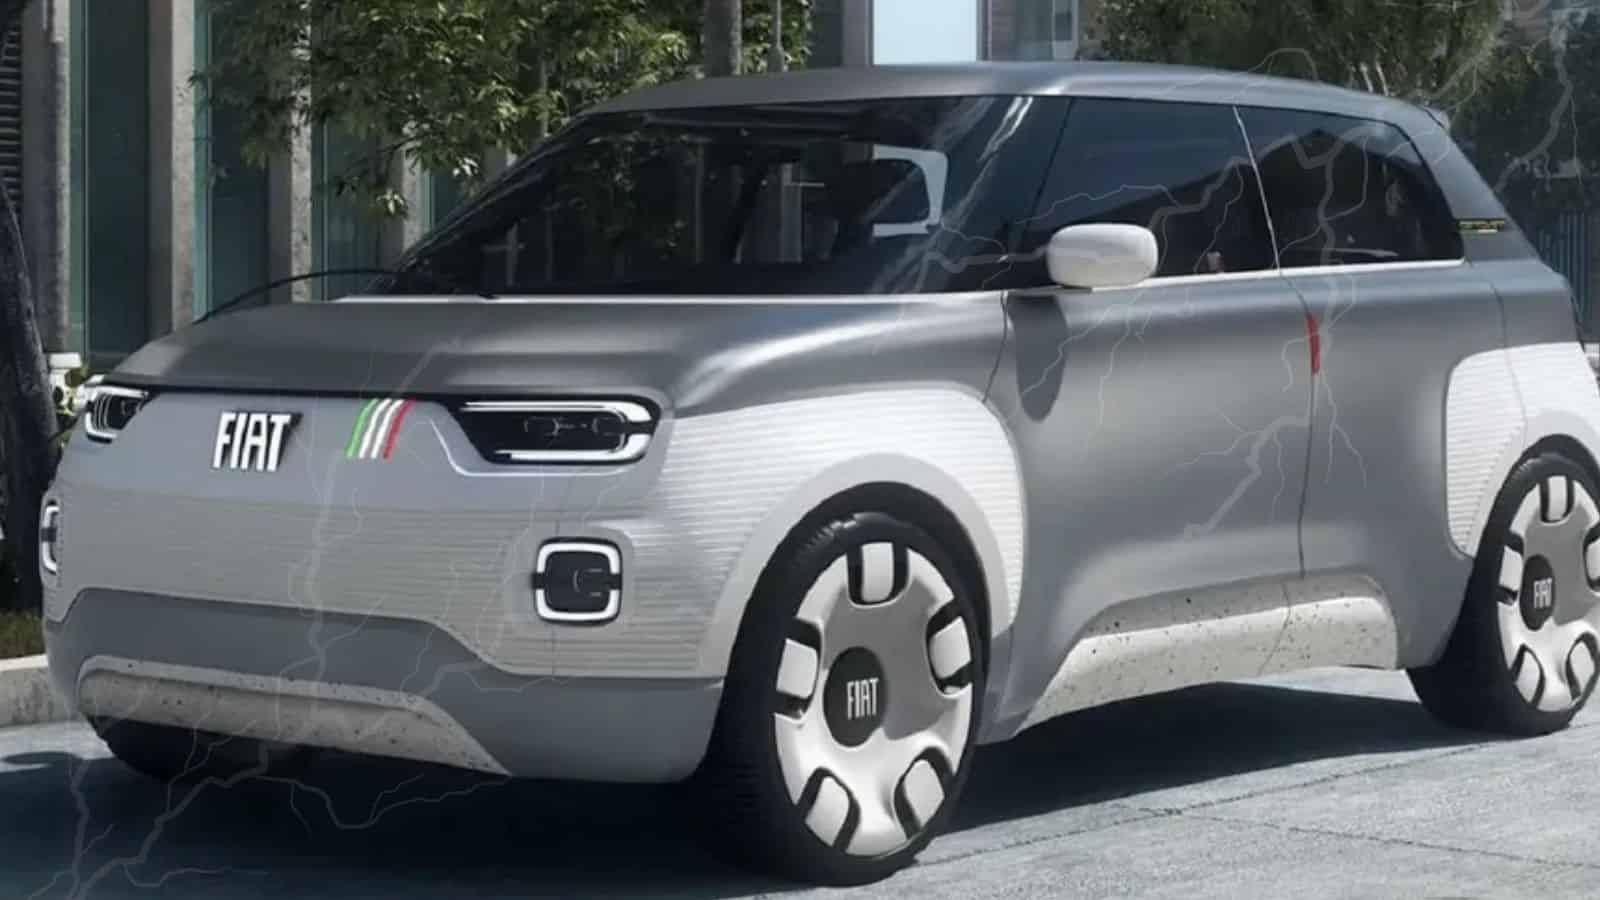  Fiat: il suo futuro sarà totalmente elettrico e con zero emissioni